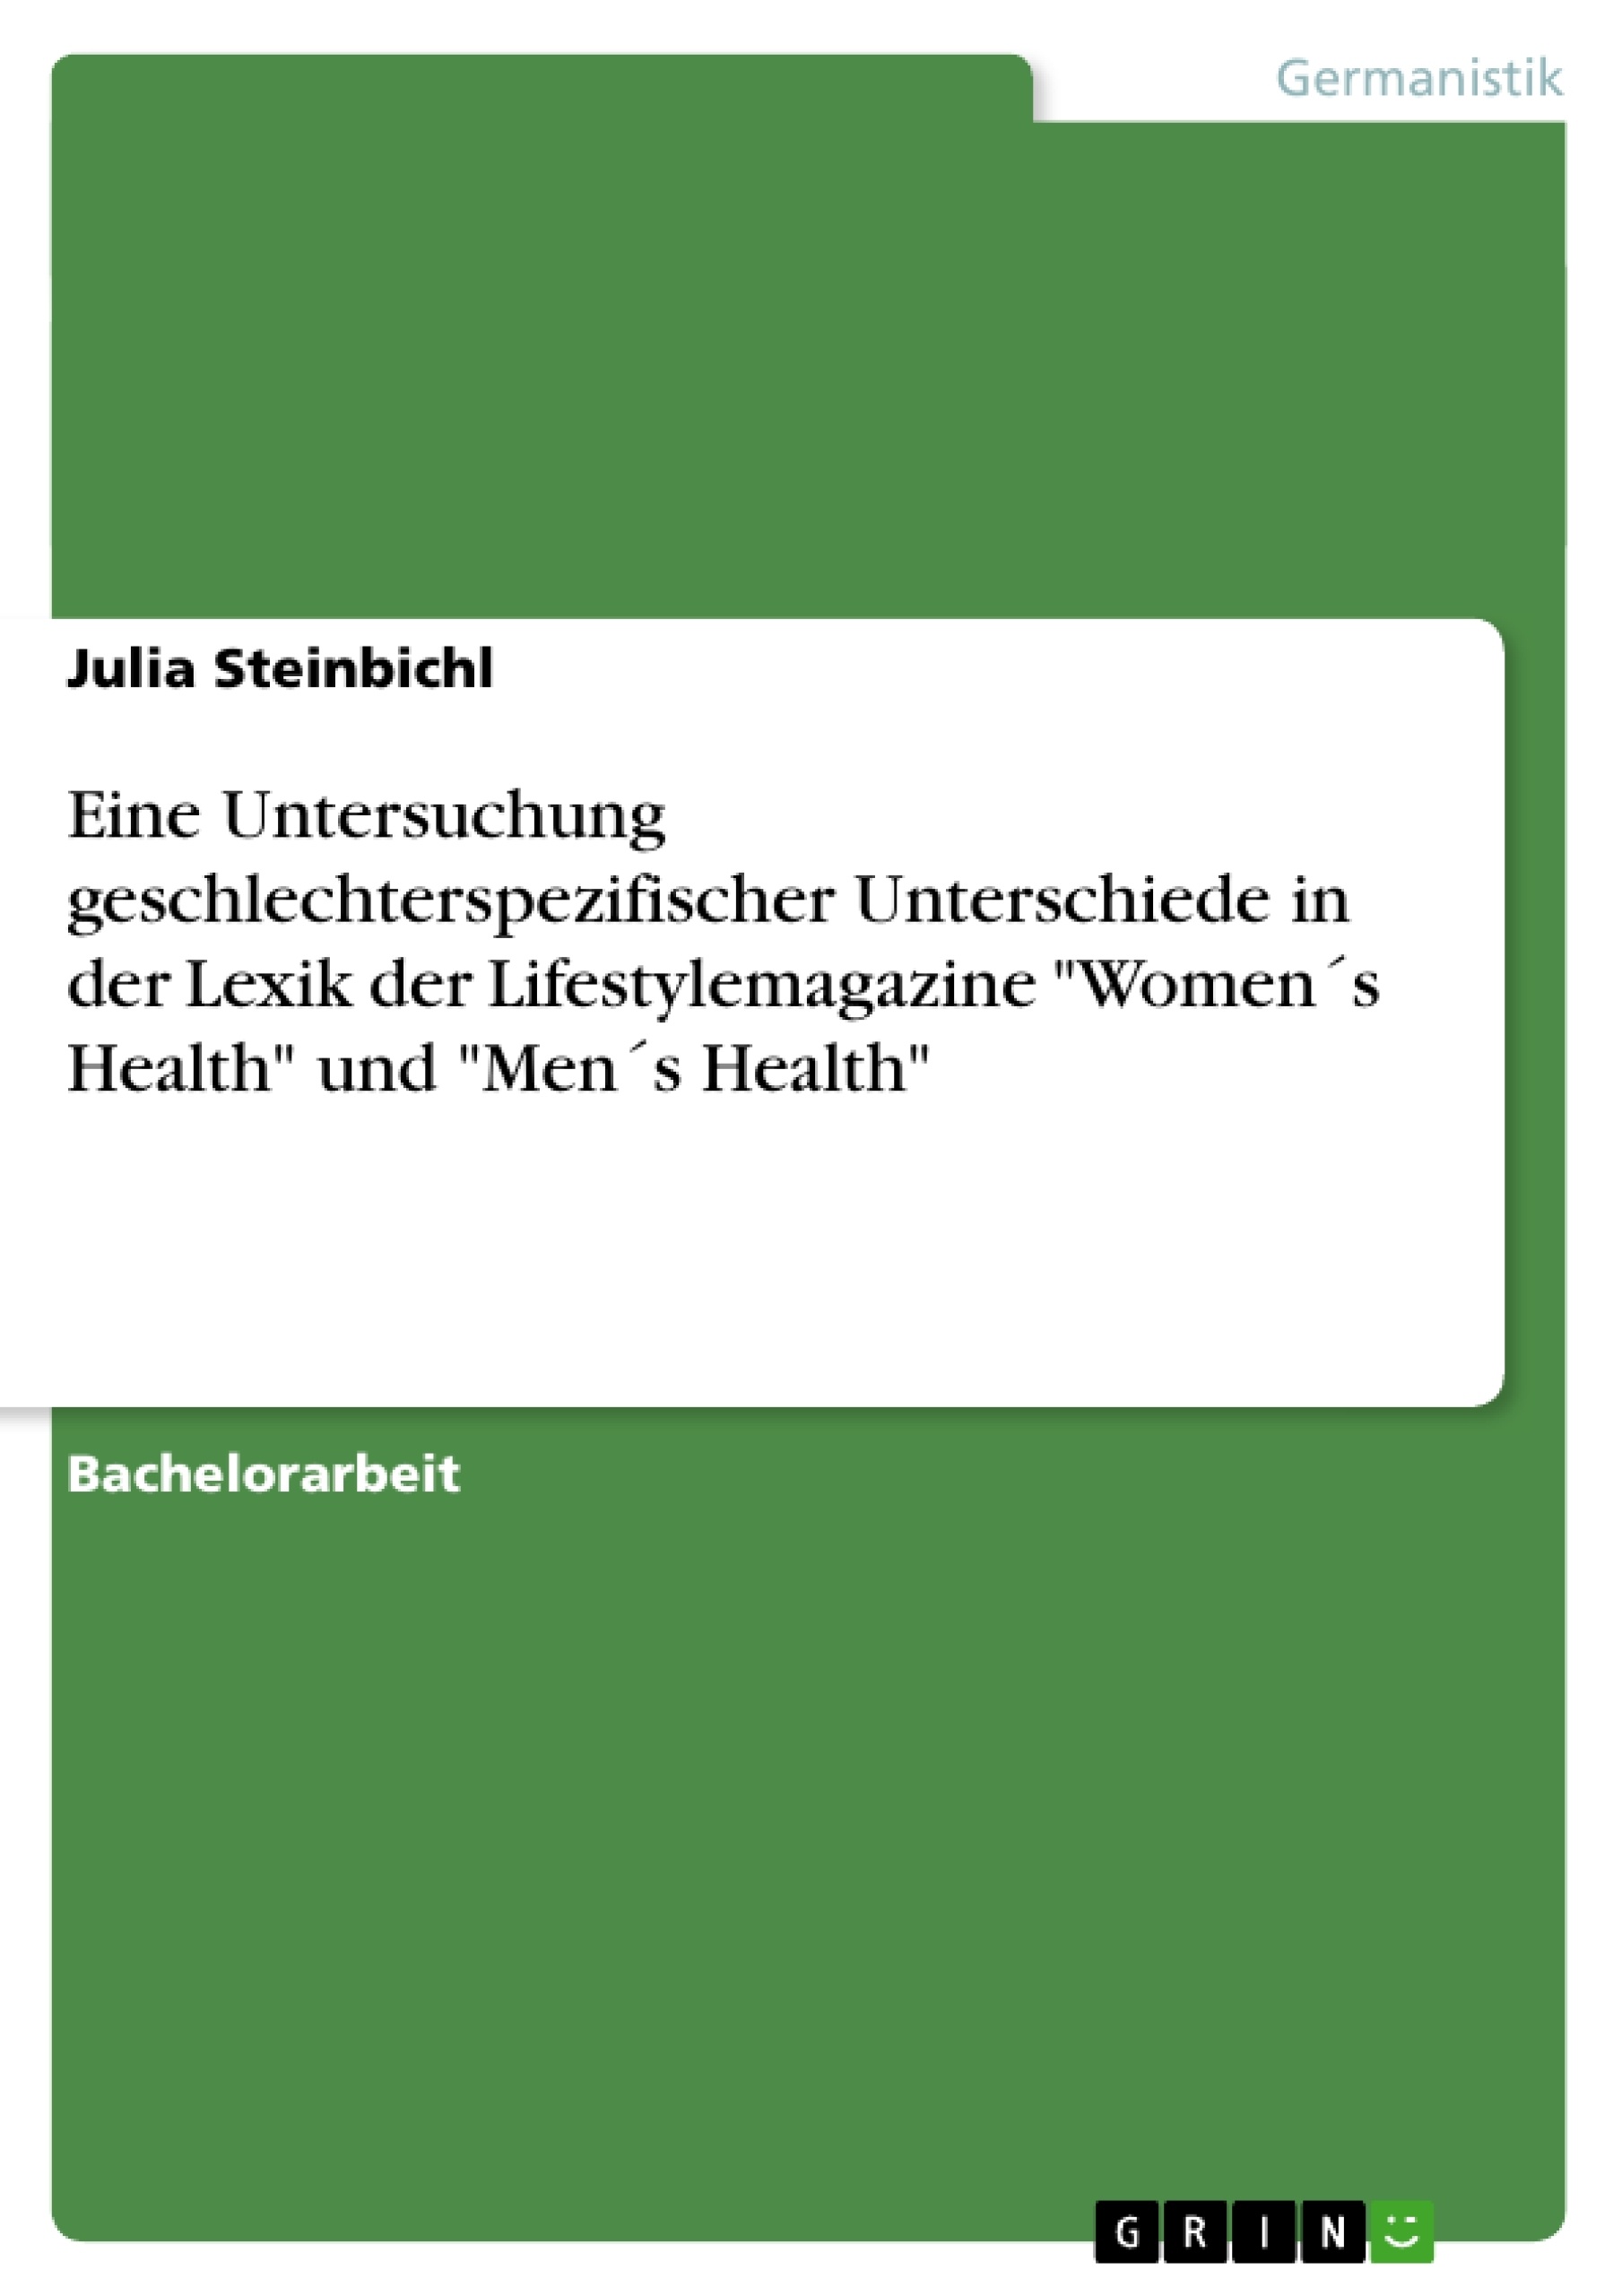 Title: Die Lexik der Lifestylemagazine "Women's Health" und "Men's Health". Geschlechterspezifische Unterschiede